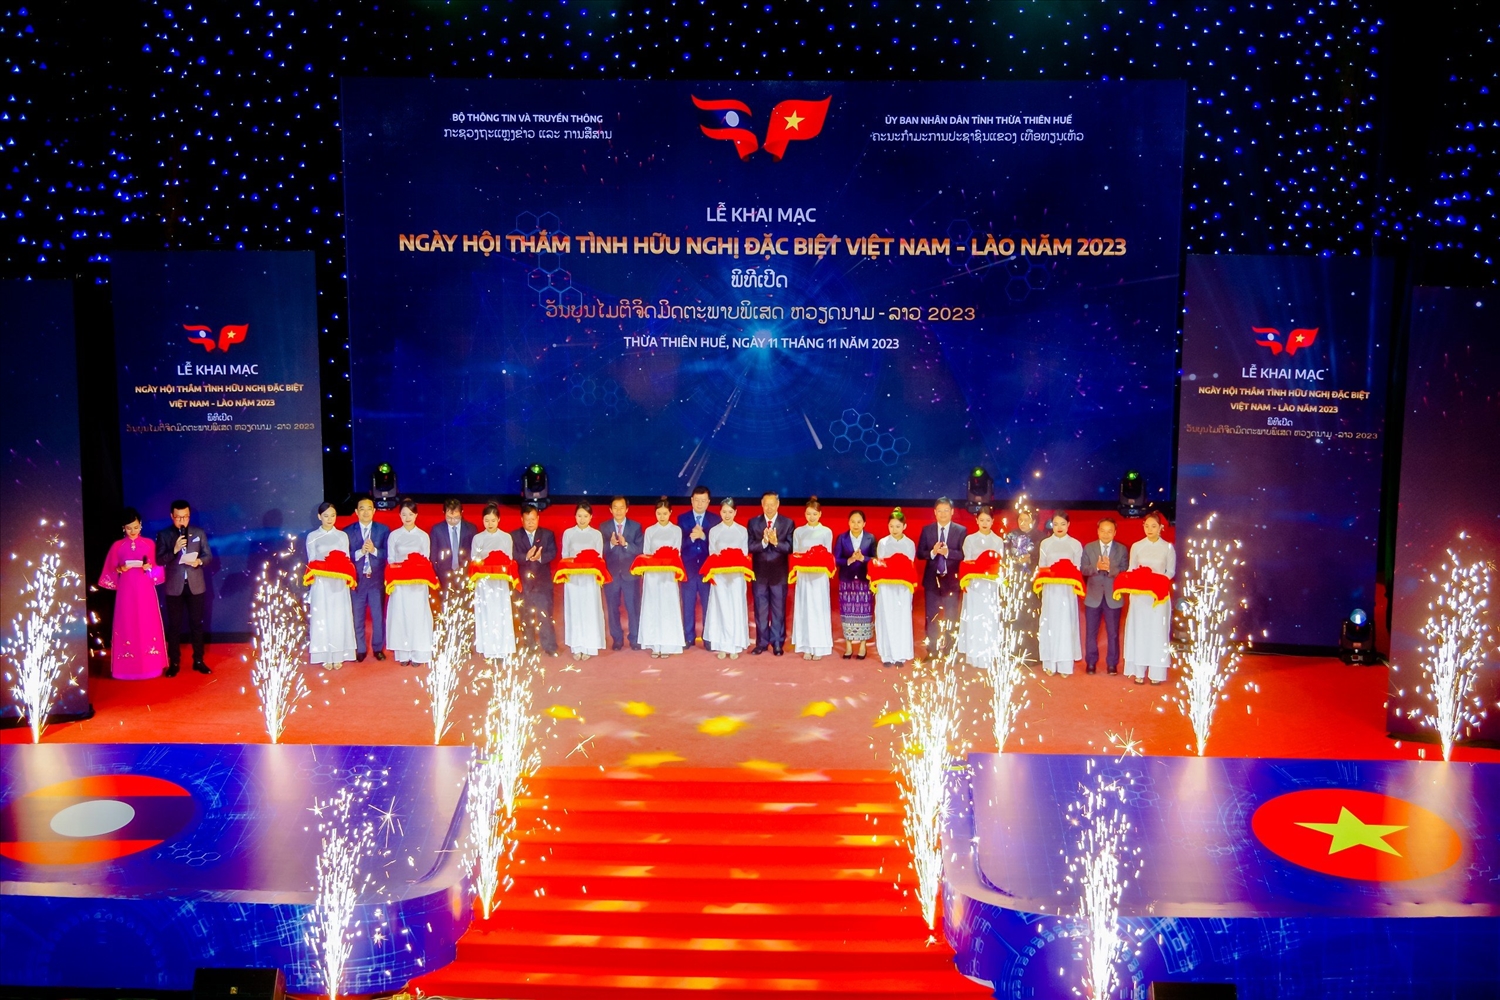 Các đại biểu cắt băng khai mạc Chương trình “Ngày hội thắm tình hữu nghị đặc biệt Việt Nam - Lào năm 2023” 